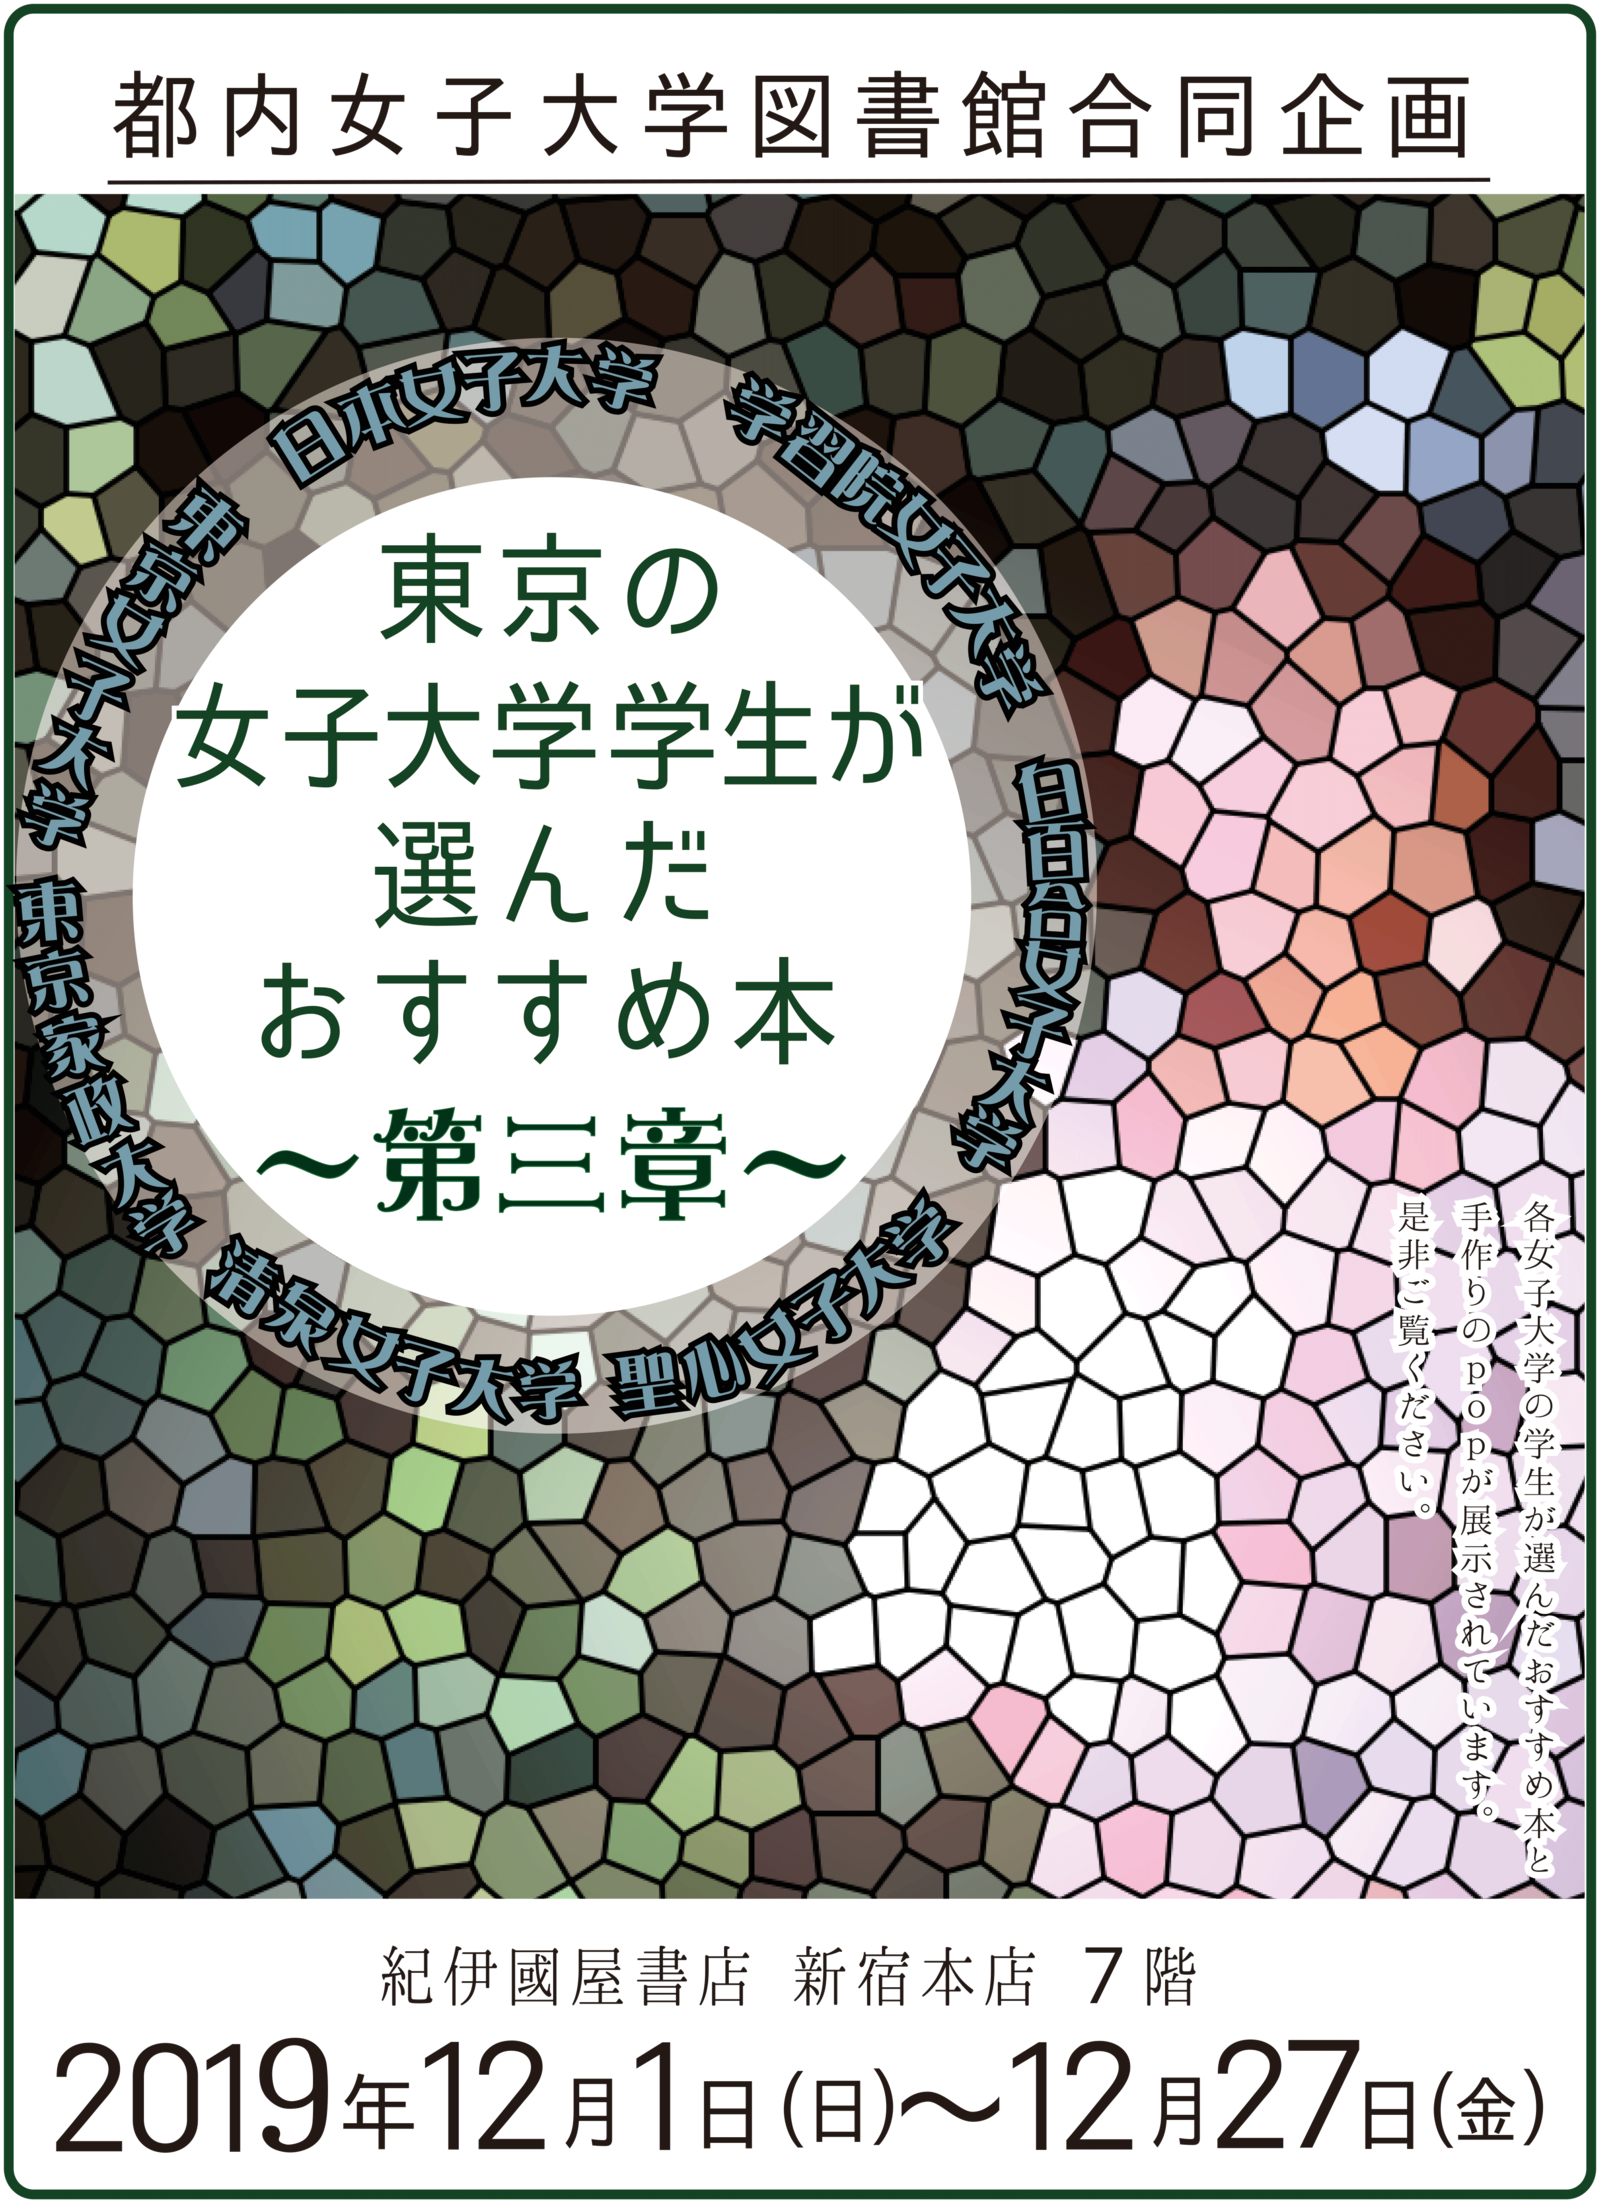 今年も開催！都内の女子大学図書館合同企画「東京の女子大学学生が選んだおすすめ本」フェア